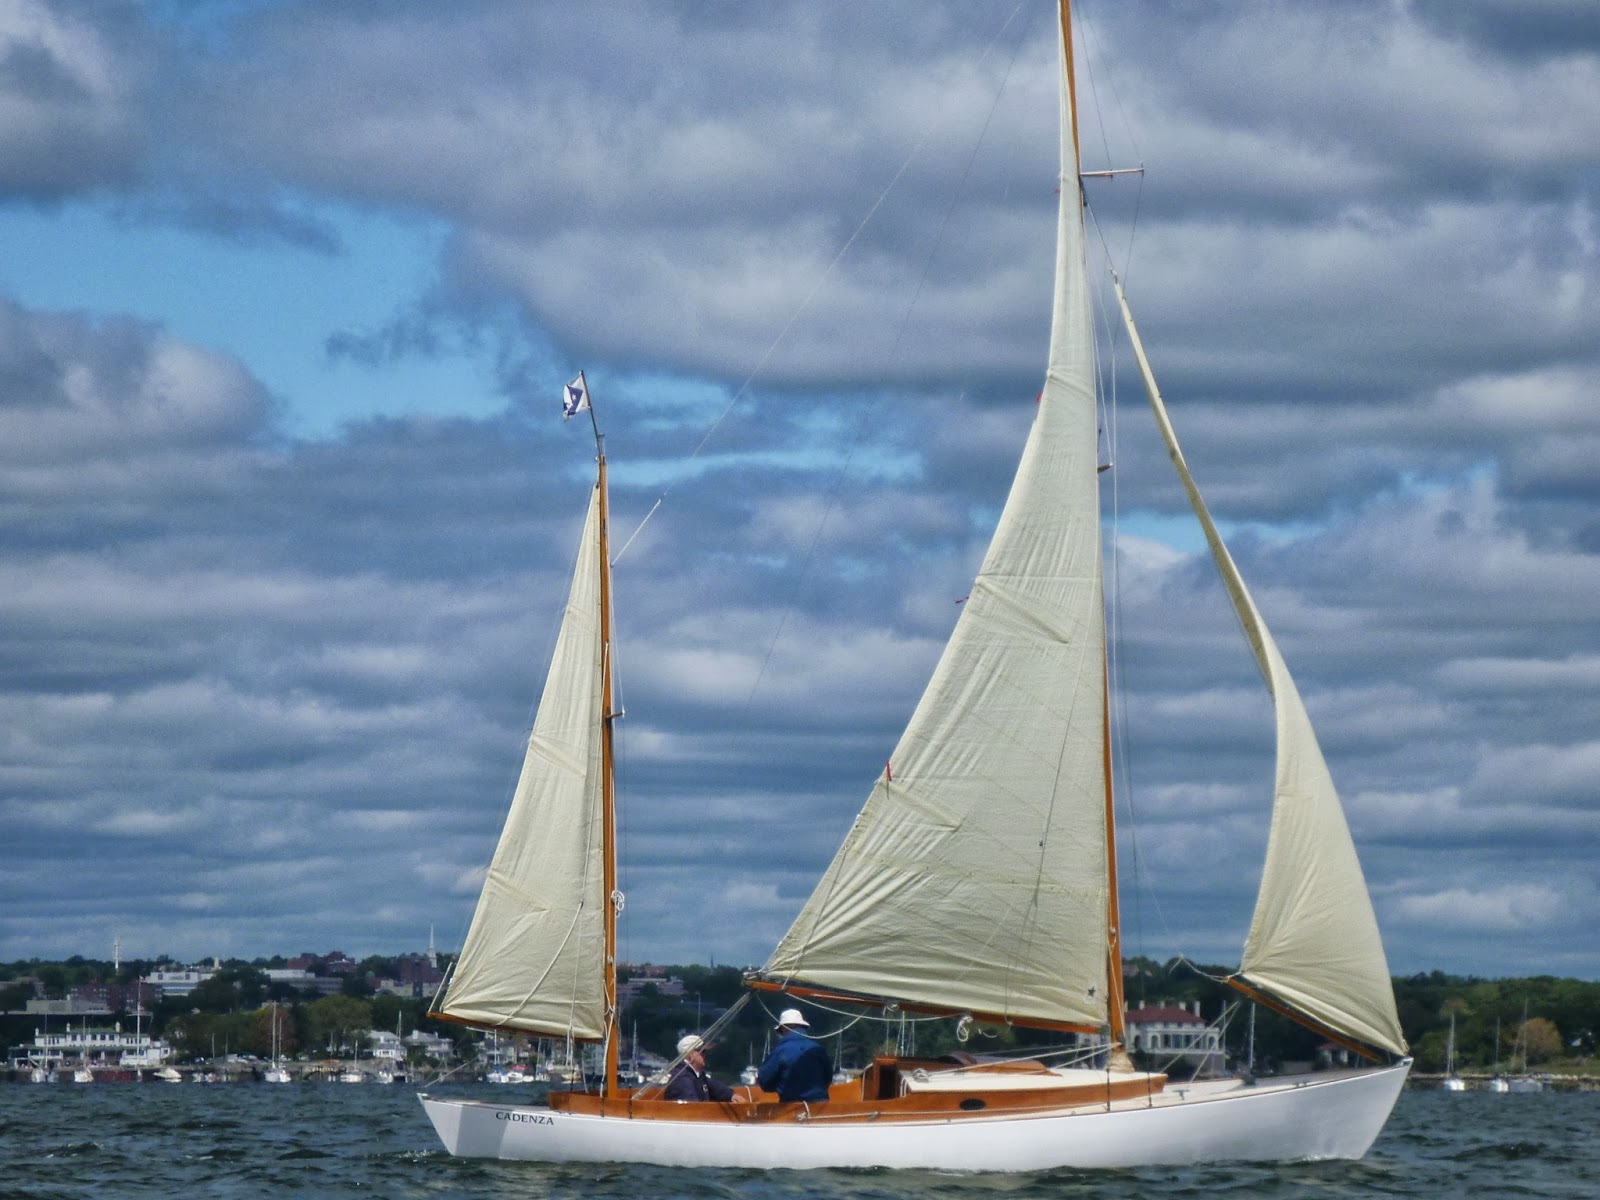 Voyages&gt;`Â·.Â¸Â¸.Â·Â´Â¯`Â·Â¸&gt; : Indian Harbor Classics Race 2013